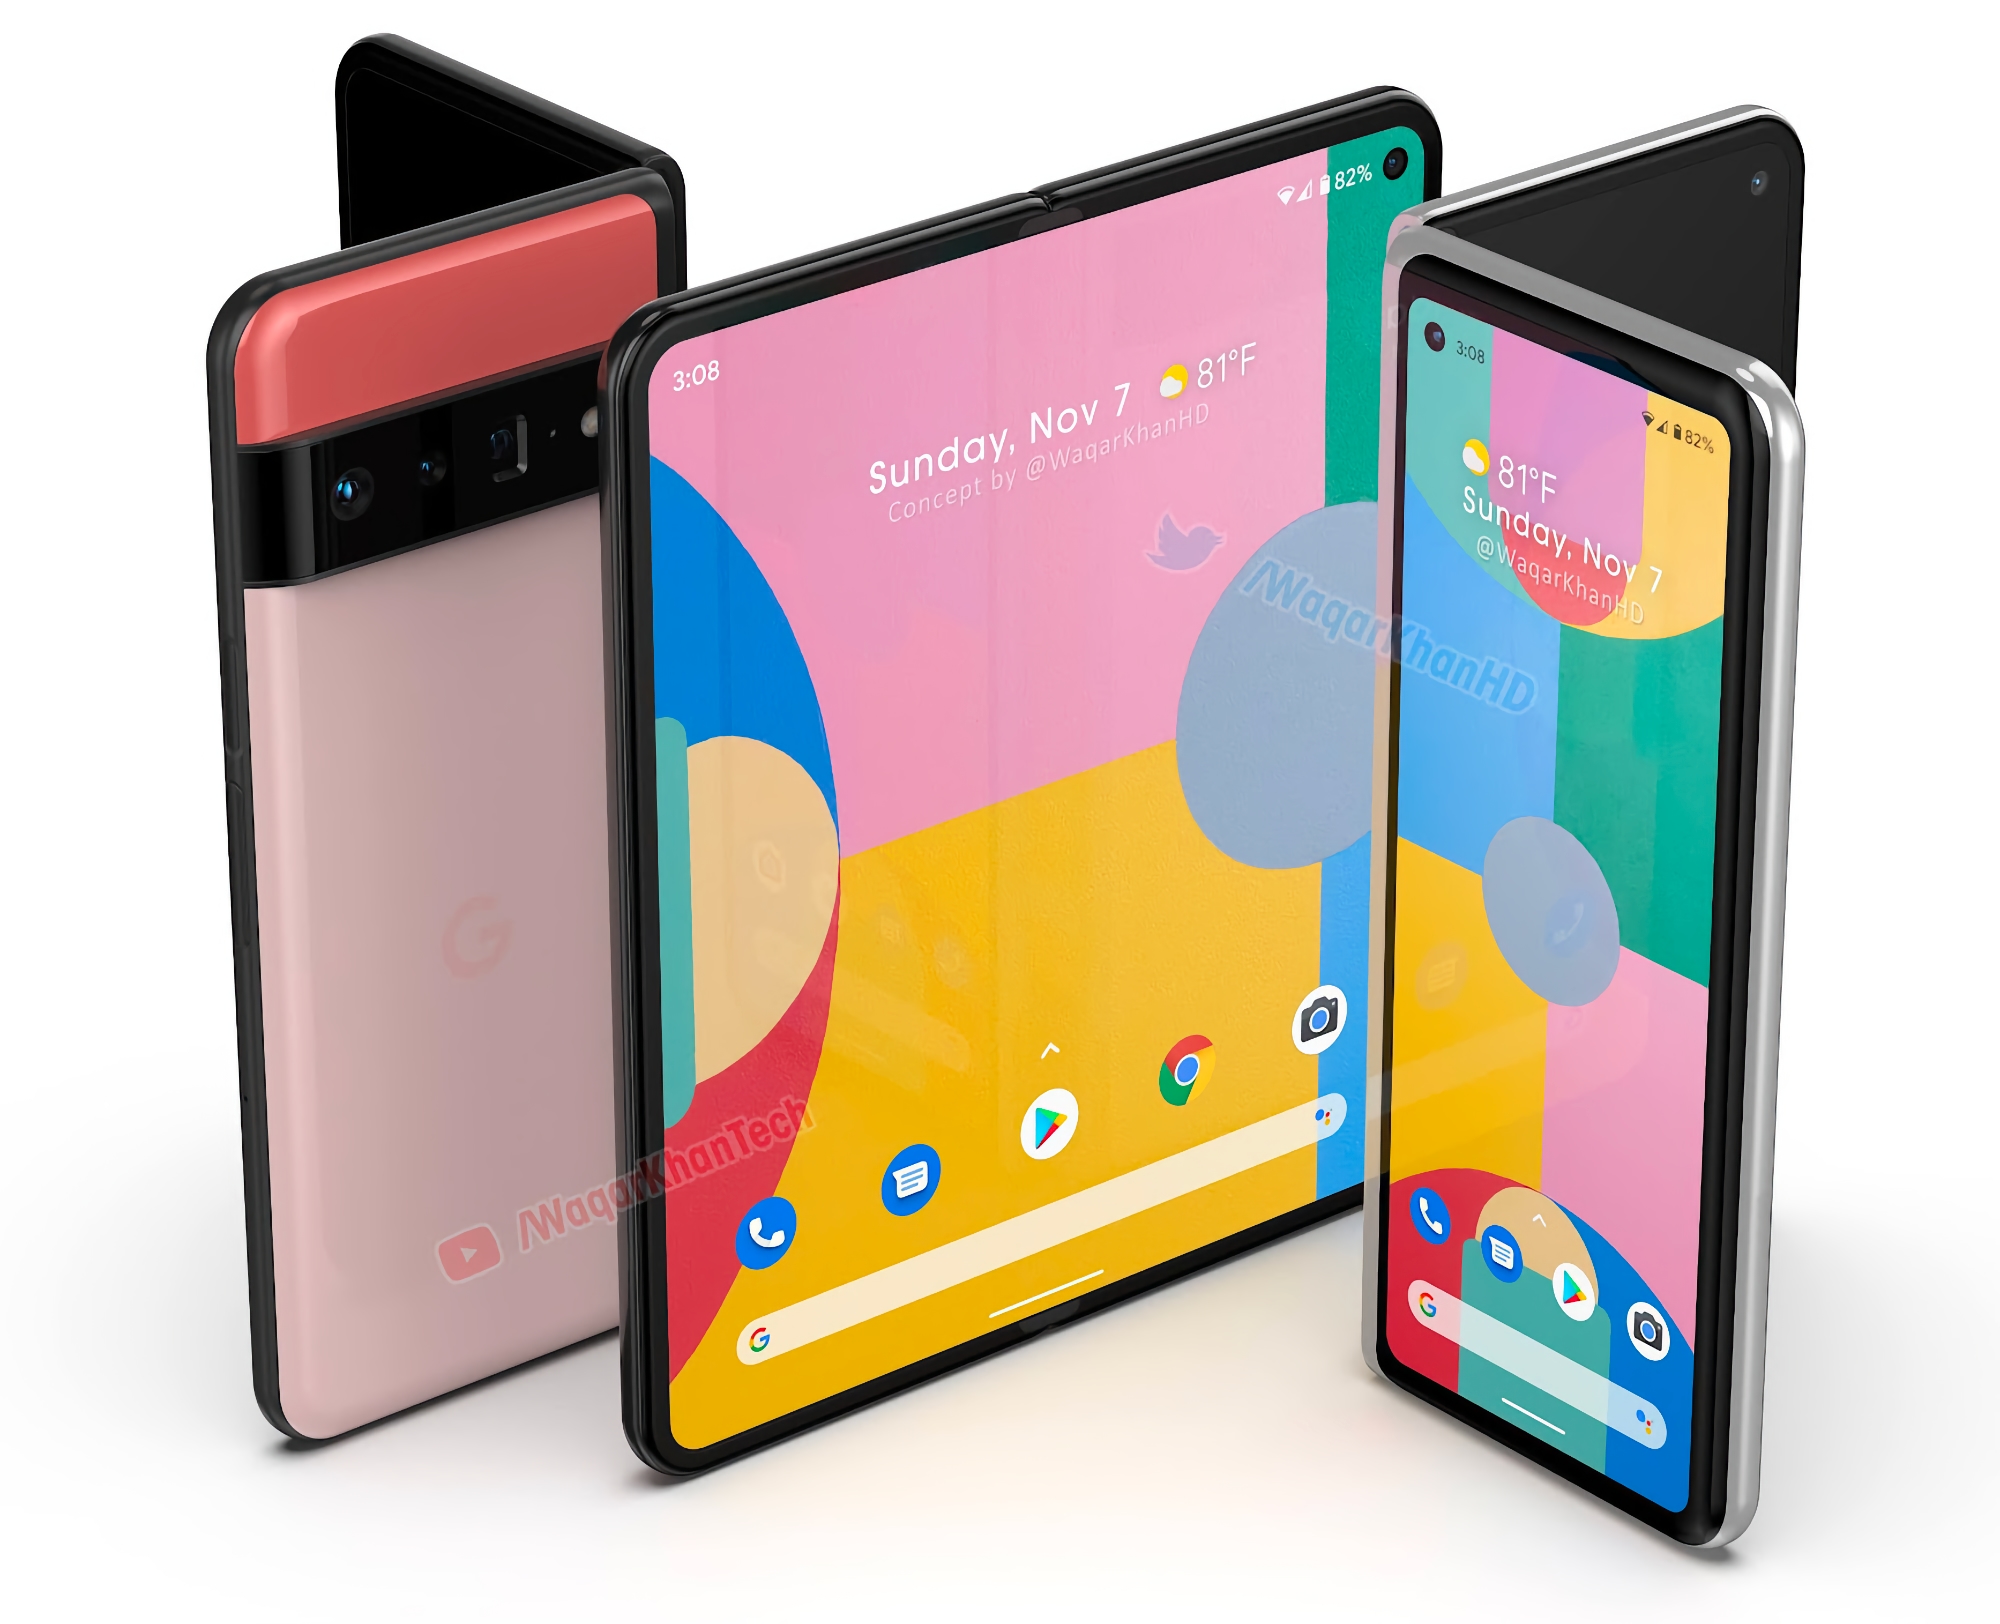 Fuente: Teléfono inteligente plegable Google Pixel Notepad disponible en el cuarto trimestre de 2022